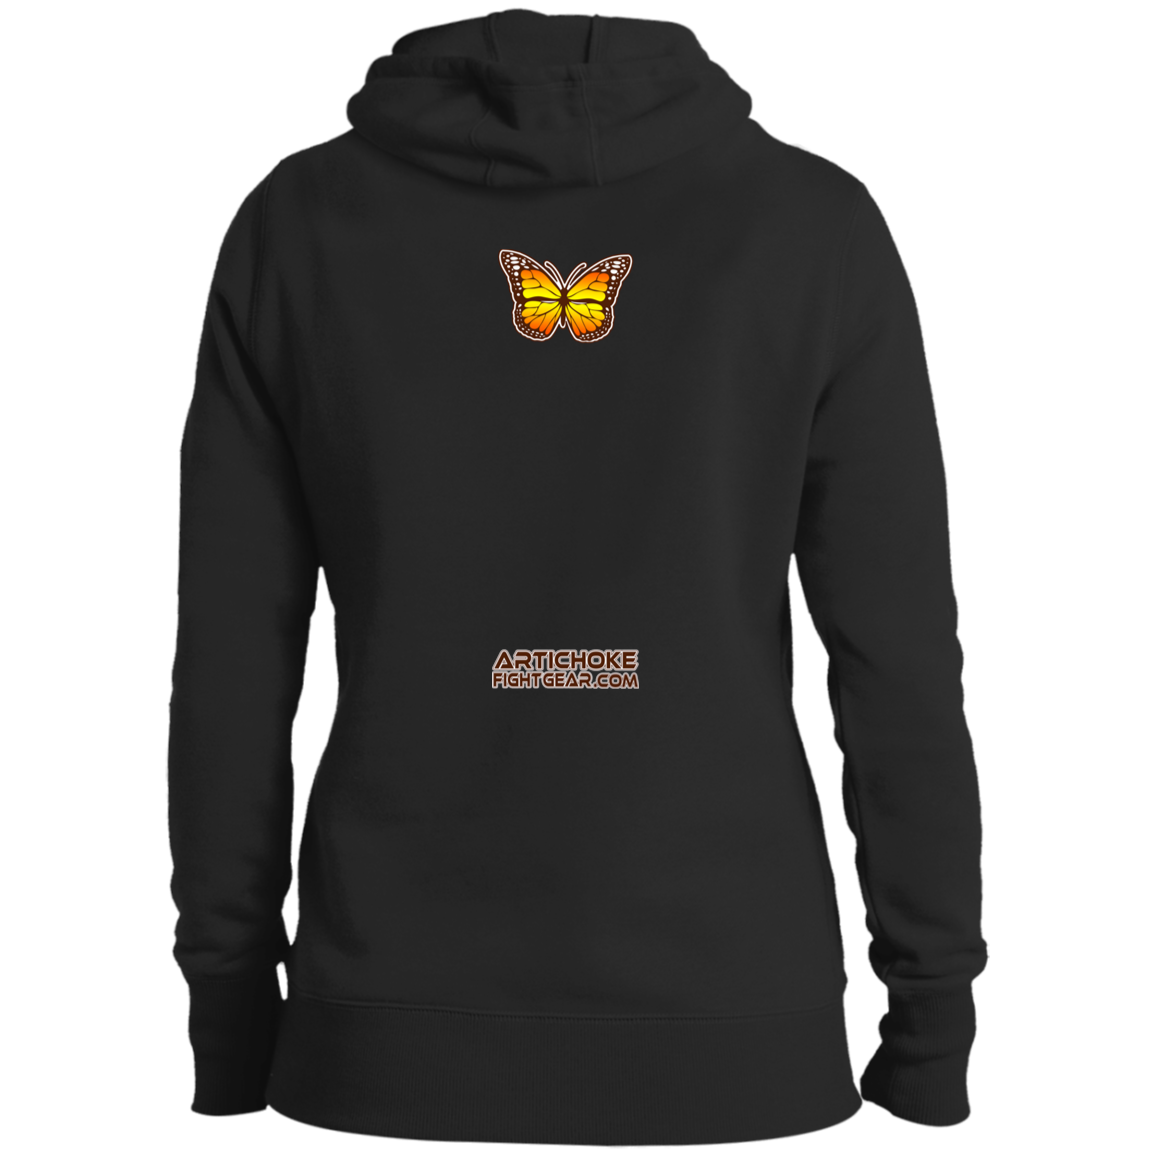 Artichoke Fight Gear Custom Design #6. Lepidopterology (Study of butterflies). Butterfly Guard. Ladies' Pullover Hooded Sweatshirt